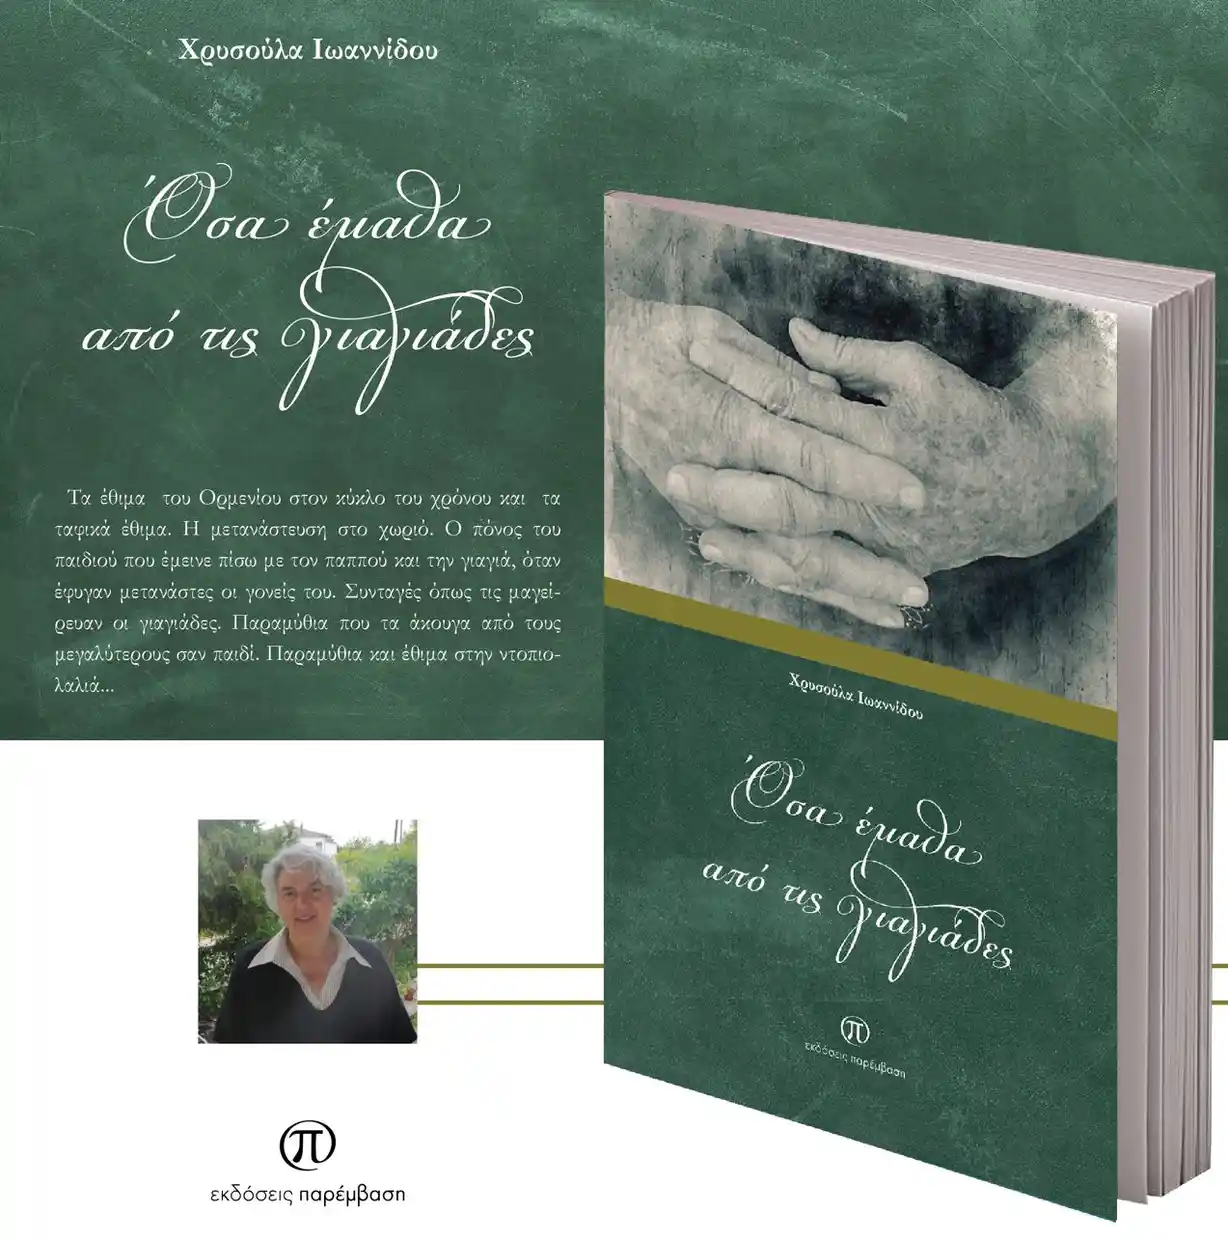 Μόλις κυκλοφόρησε το βιβλίο «Όσα έμαθα από τις γιαγιάδες» της Χρυσούλας Ιωαννίδου από τις Εκδόσεις Παρέμβαση